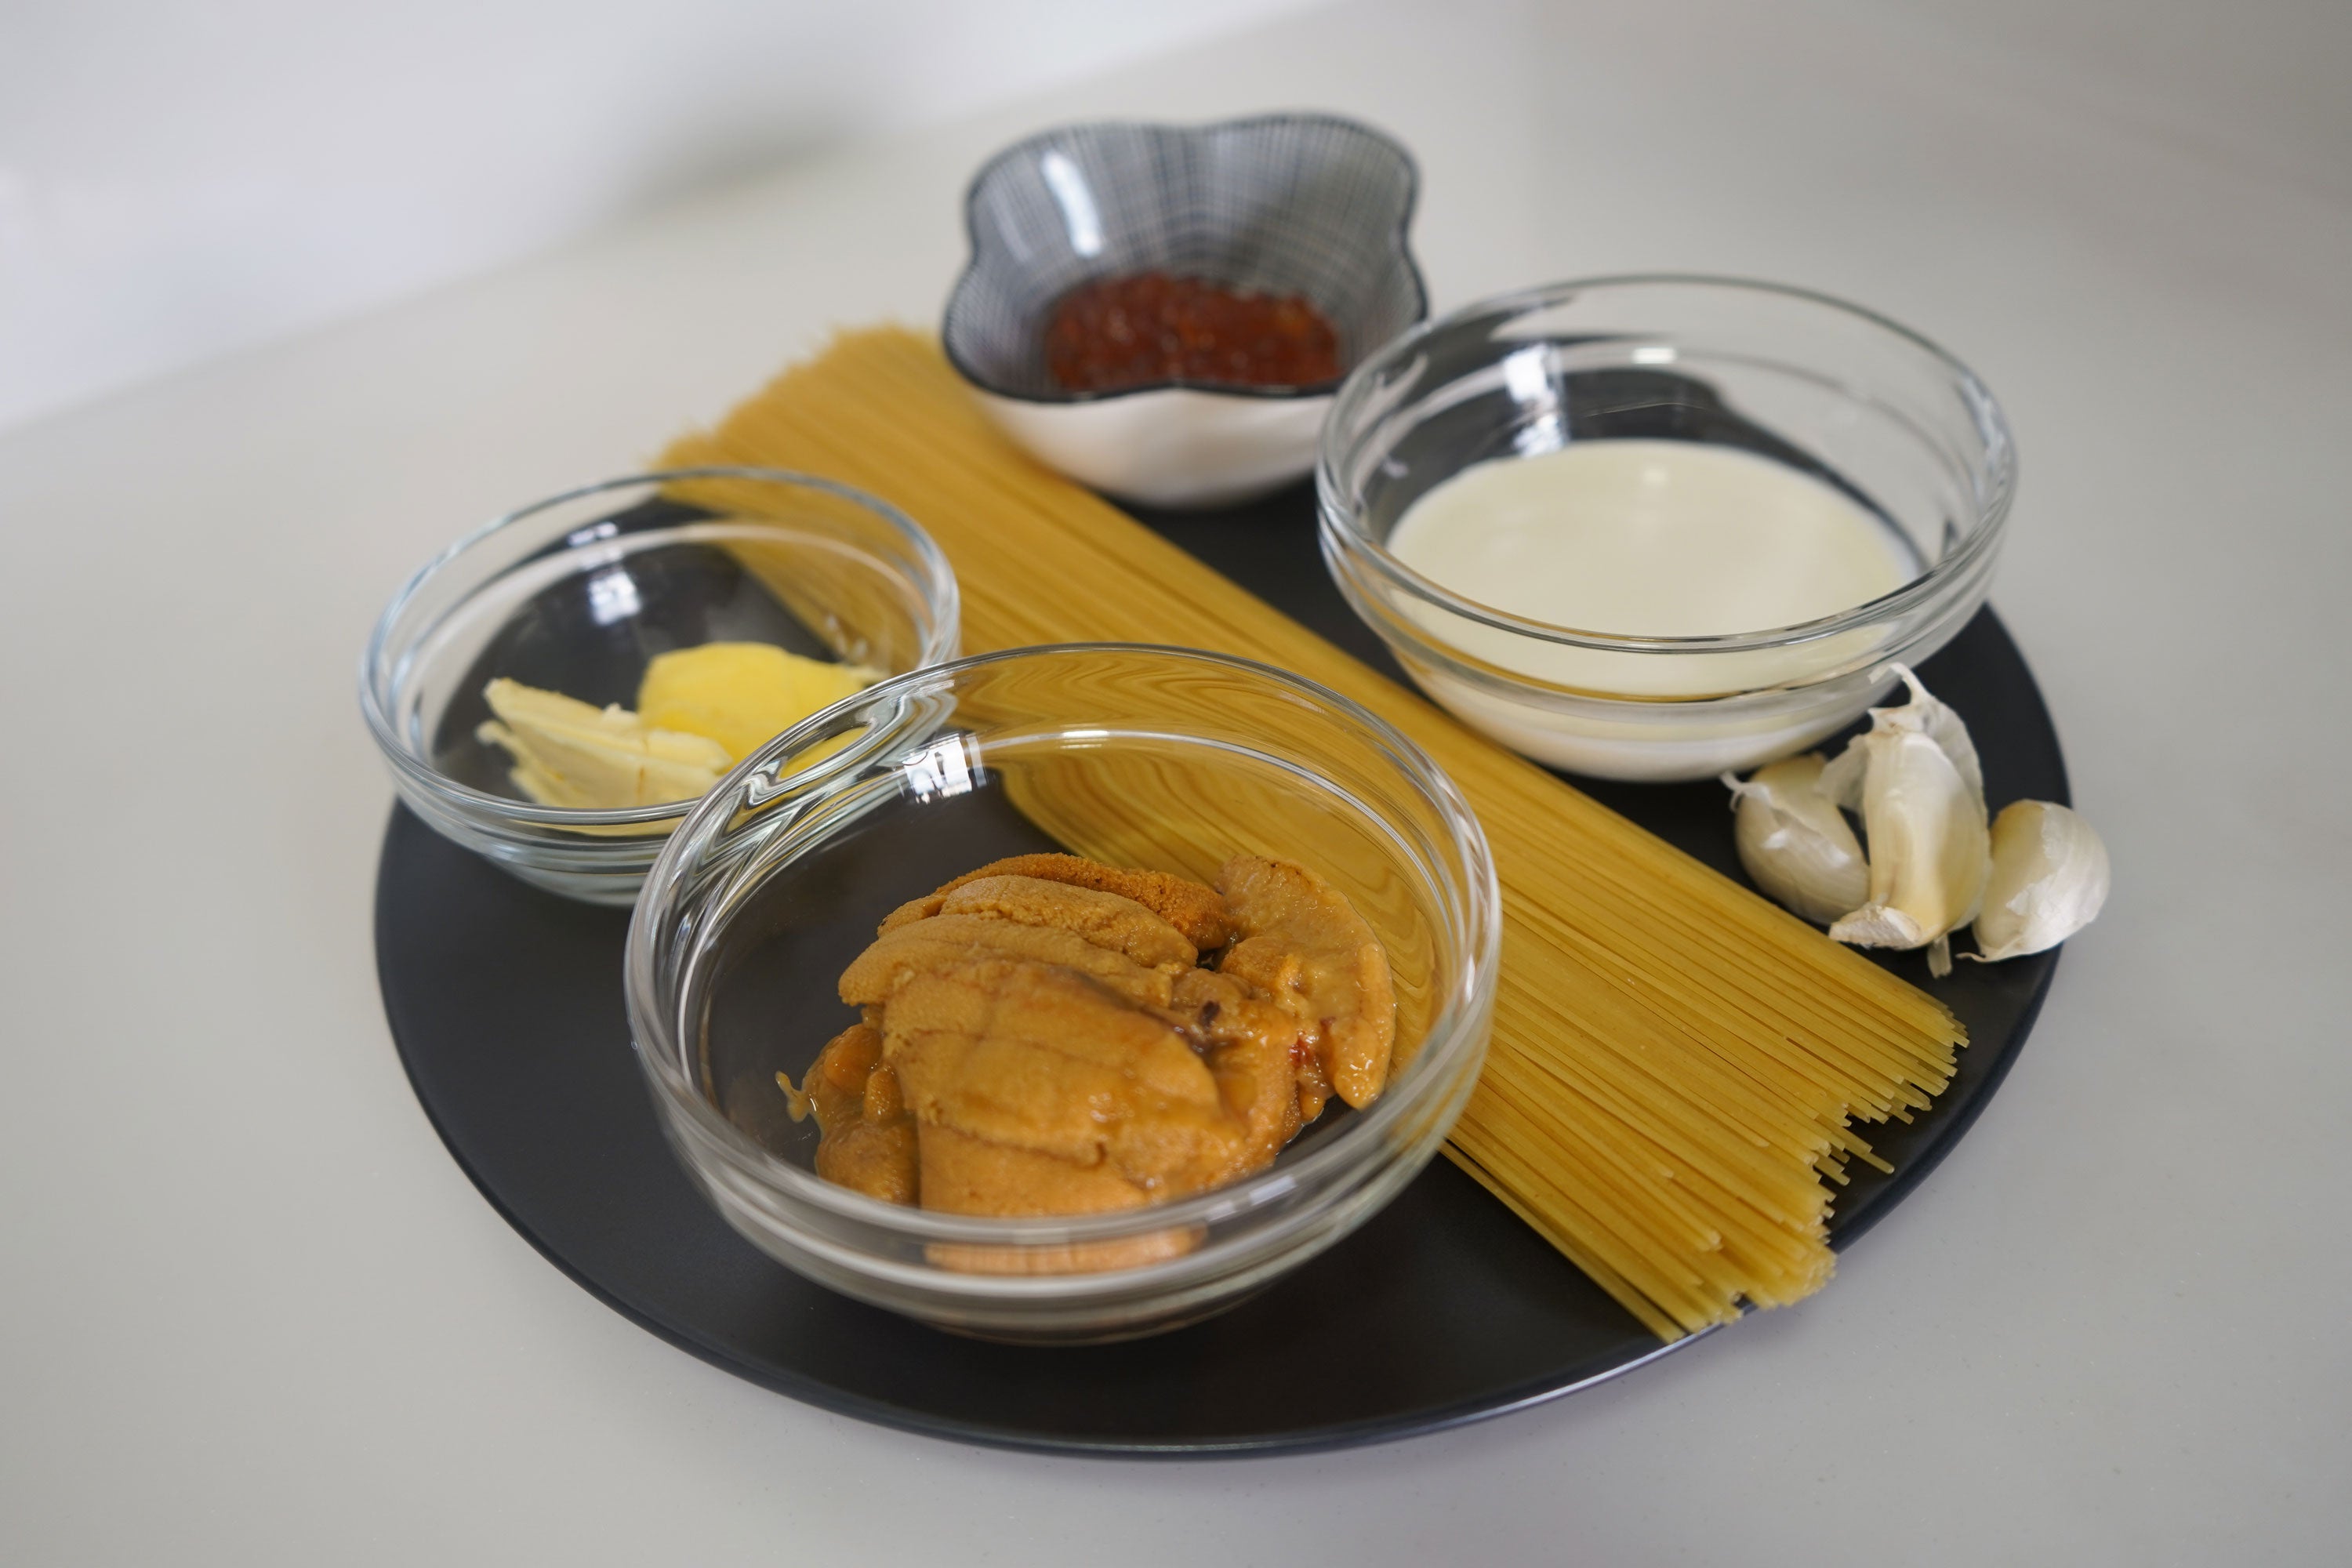 uni pasta ingredients kaizenya